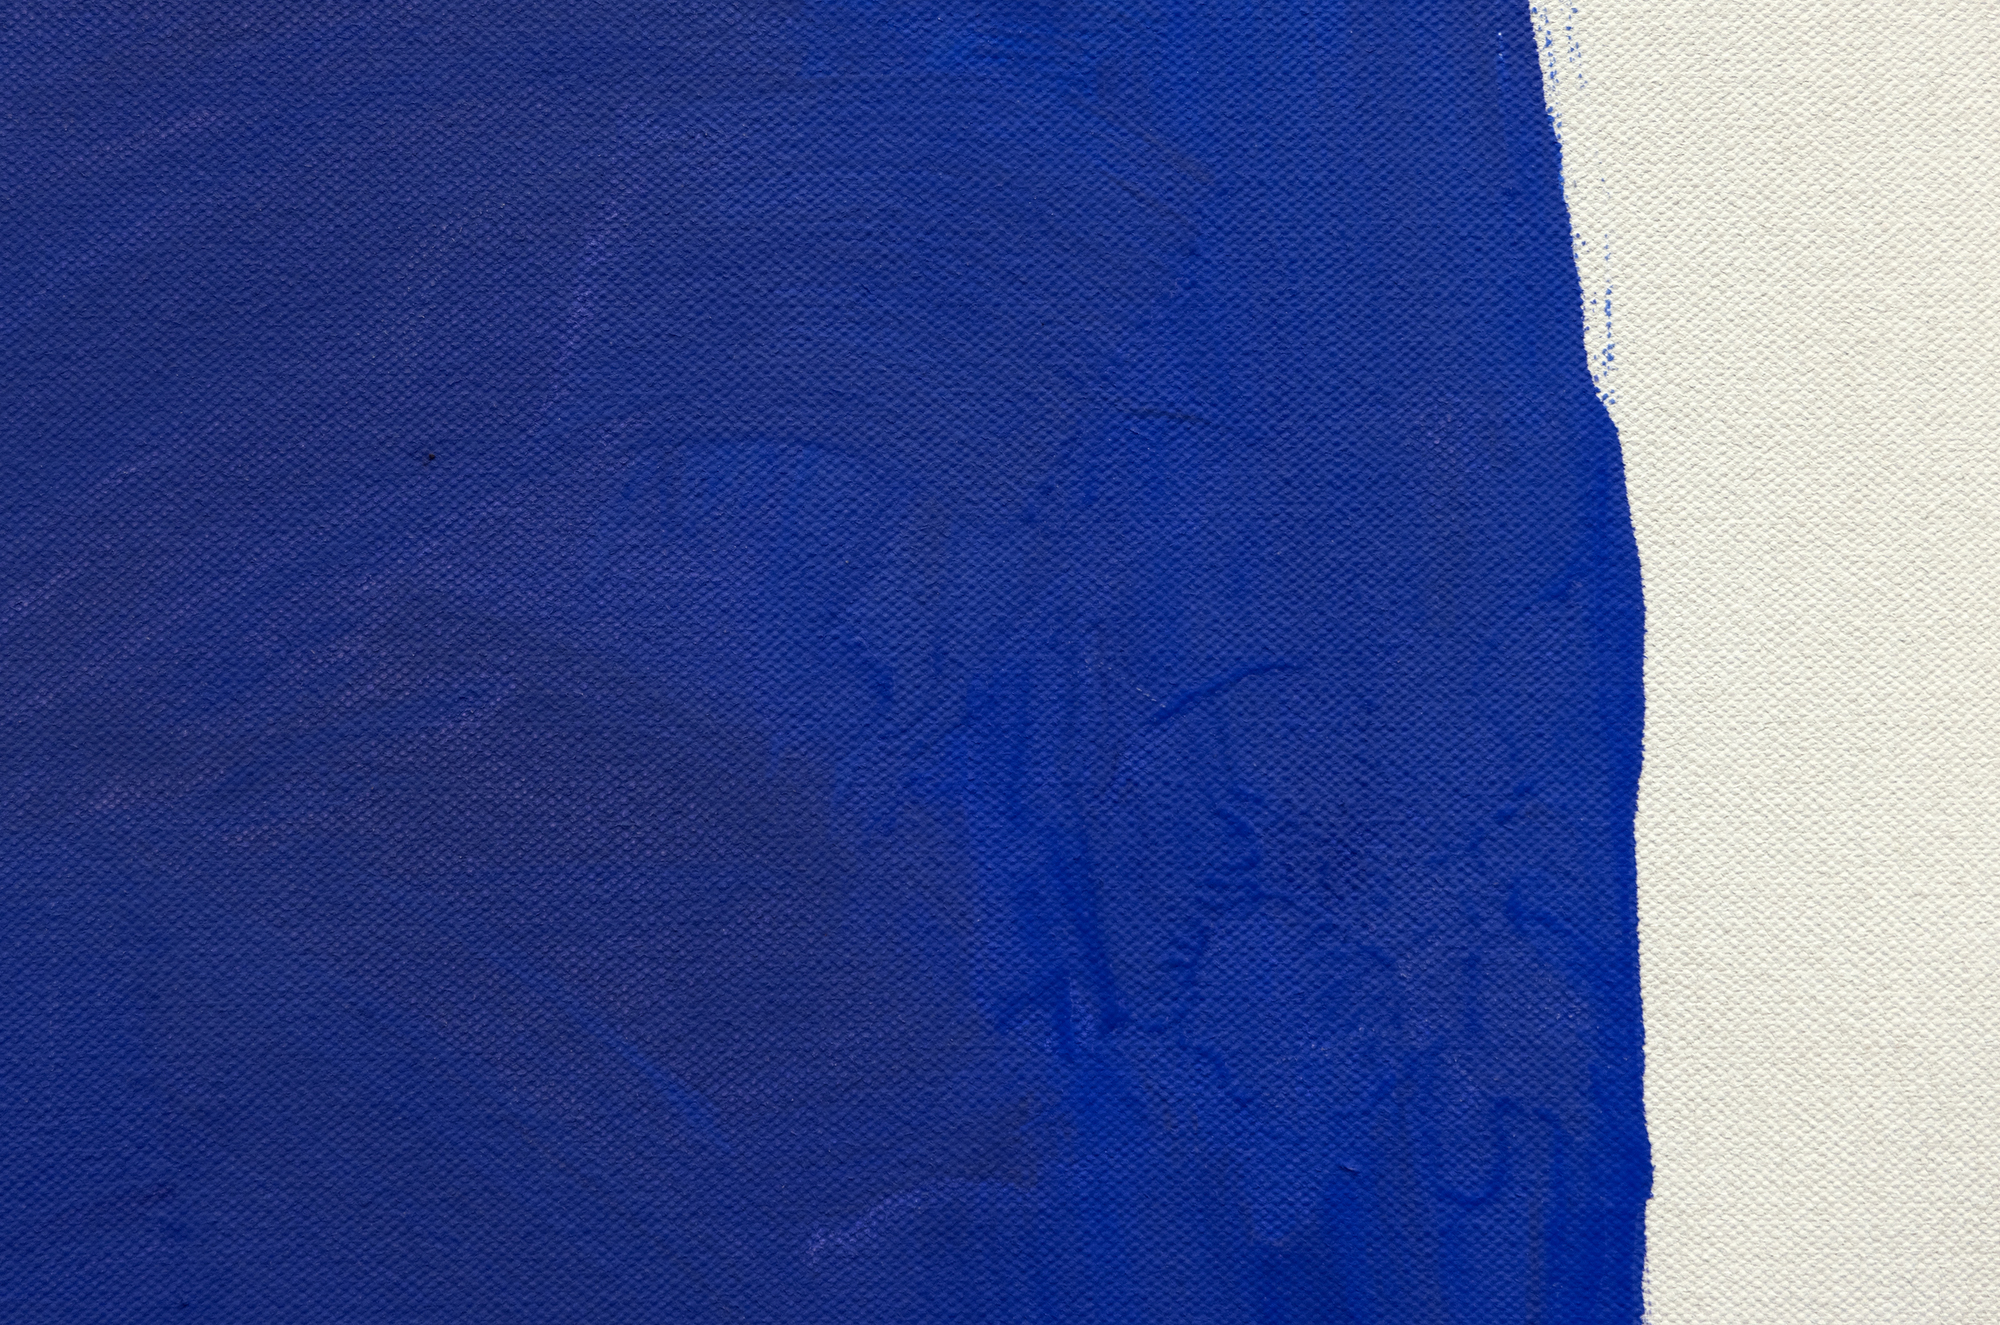 מסוף שנות החמישים ועד אמצע שנות השישים, תרומותיו המוקדמות של ריי פארקר לציור שדה הצבע בולטות להפליא באיכותן התוססת והרעננה. פארקר סידר שני בלוקים צבעוניים חזקים או יותר בעלי קצוות מחוספסים בטכניקה נמרצת ומברישה על קנבסים גדולים שהוכנו בג&#039;סו. בלוקים אלה, המעובדים בצבעים רוויים אך מלאי חיים בעדינות, מפגינים אנרגיה ייחודית. בעוד שהקומפוזיציות של פארקר עשויות להזכיר את אלה של רותקו, האופן שבו הצבע מועבר - בצורה מוצקה ועוצמתית - מבדיל ביניהן. תוך שמירה על קנה המידה הגדול והדינמיות של אסכולת ניו יורק, עבודתו של פרקר מתפצלת בכך שהיא מוותרת על העוצמה הרגשית המזוהה לעתים קרובות עם אקספרסיוניזם מופשט ומאמצת חזון של תנועה נטולת הפאתוס האופייני לה.